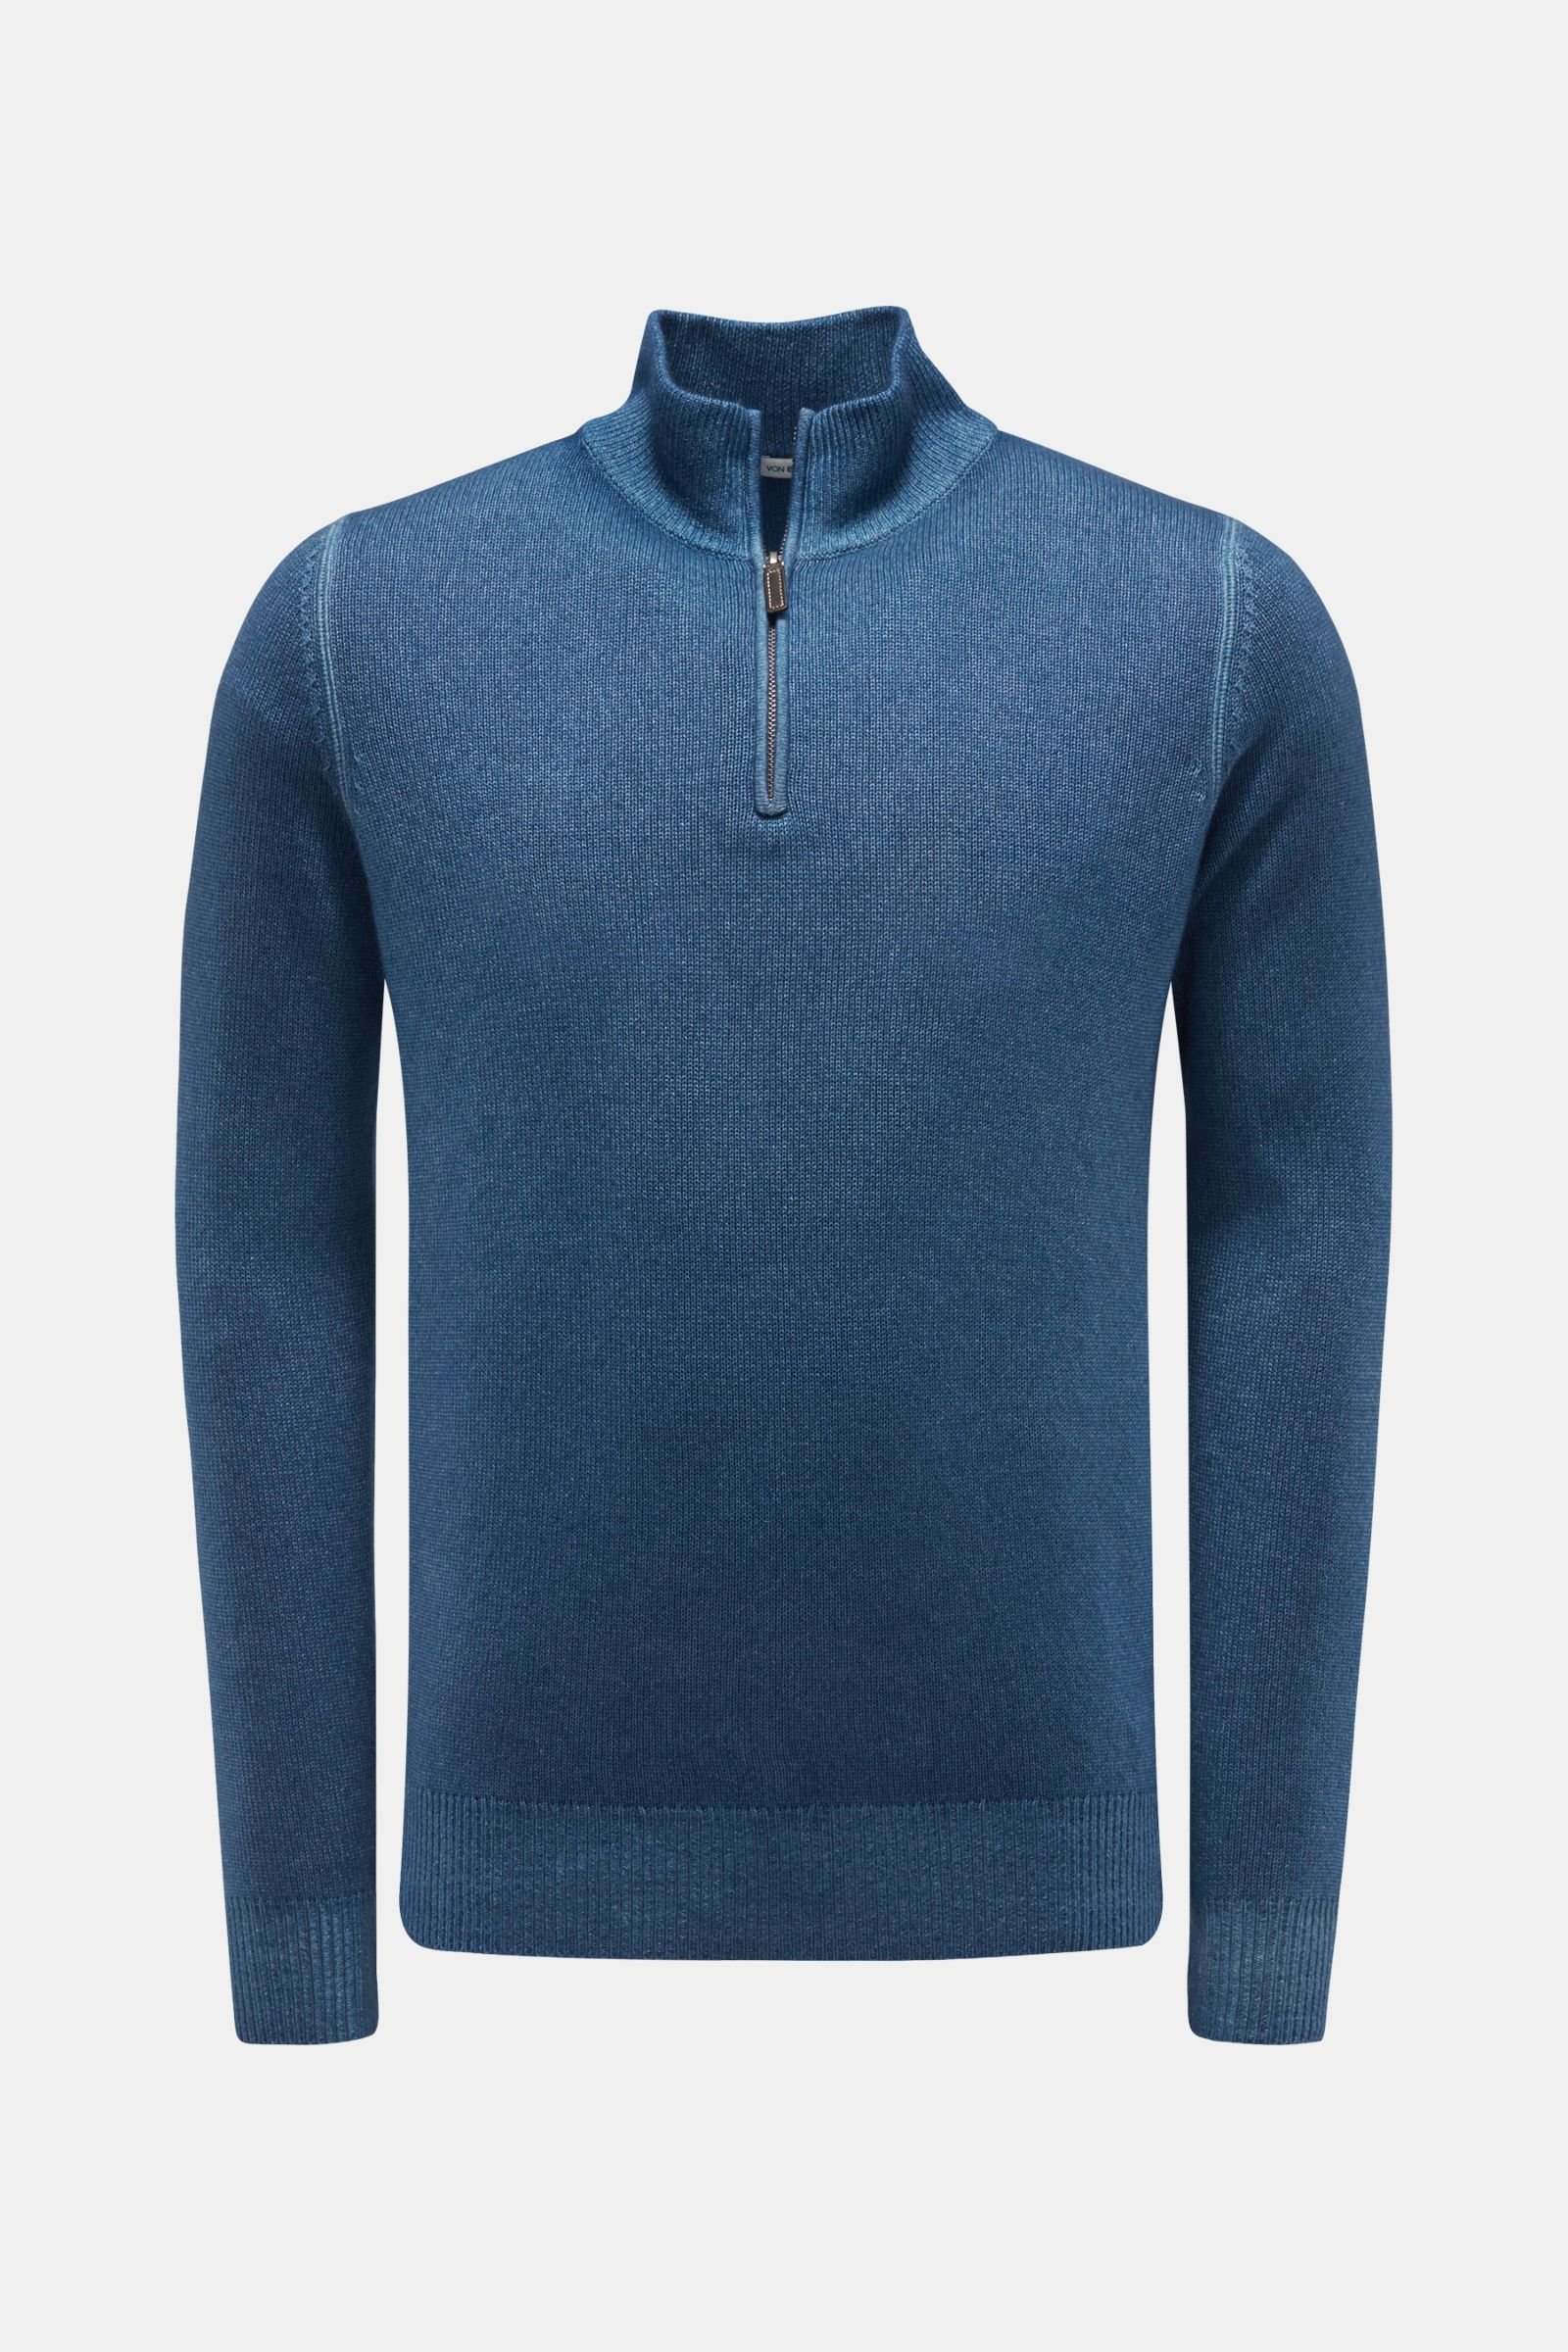 Cashmere half-zip jumper blue